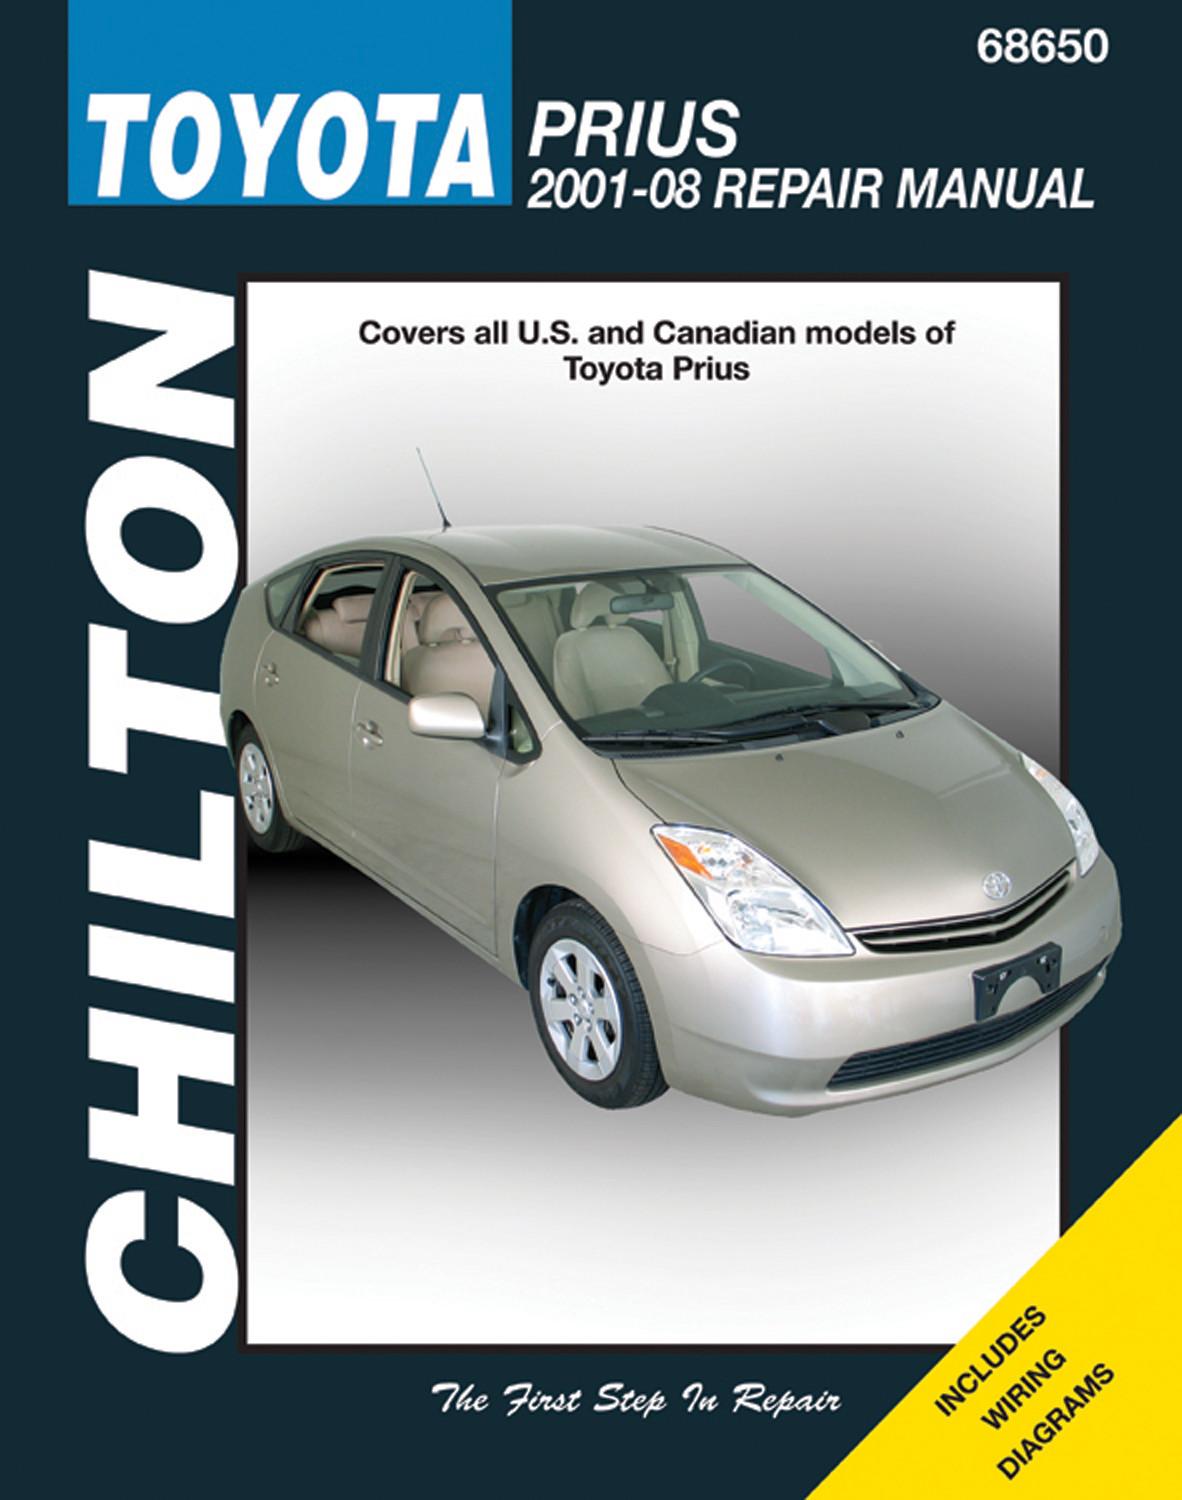 Repair And Service Manual Toyota Prius biogett